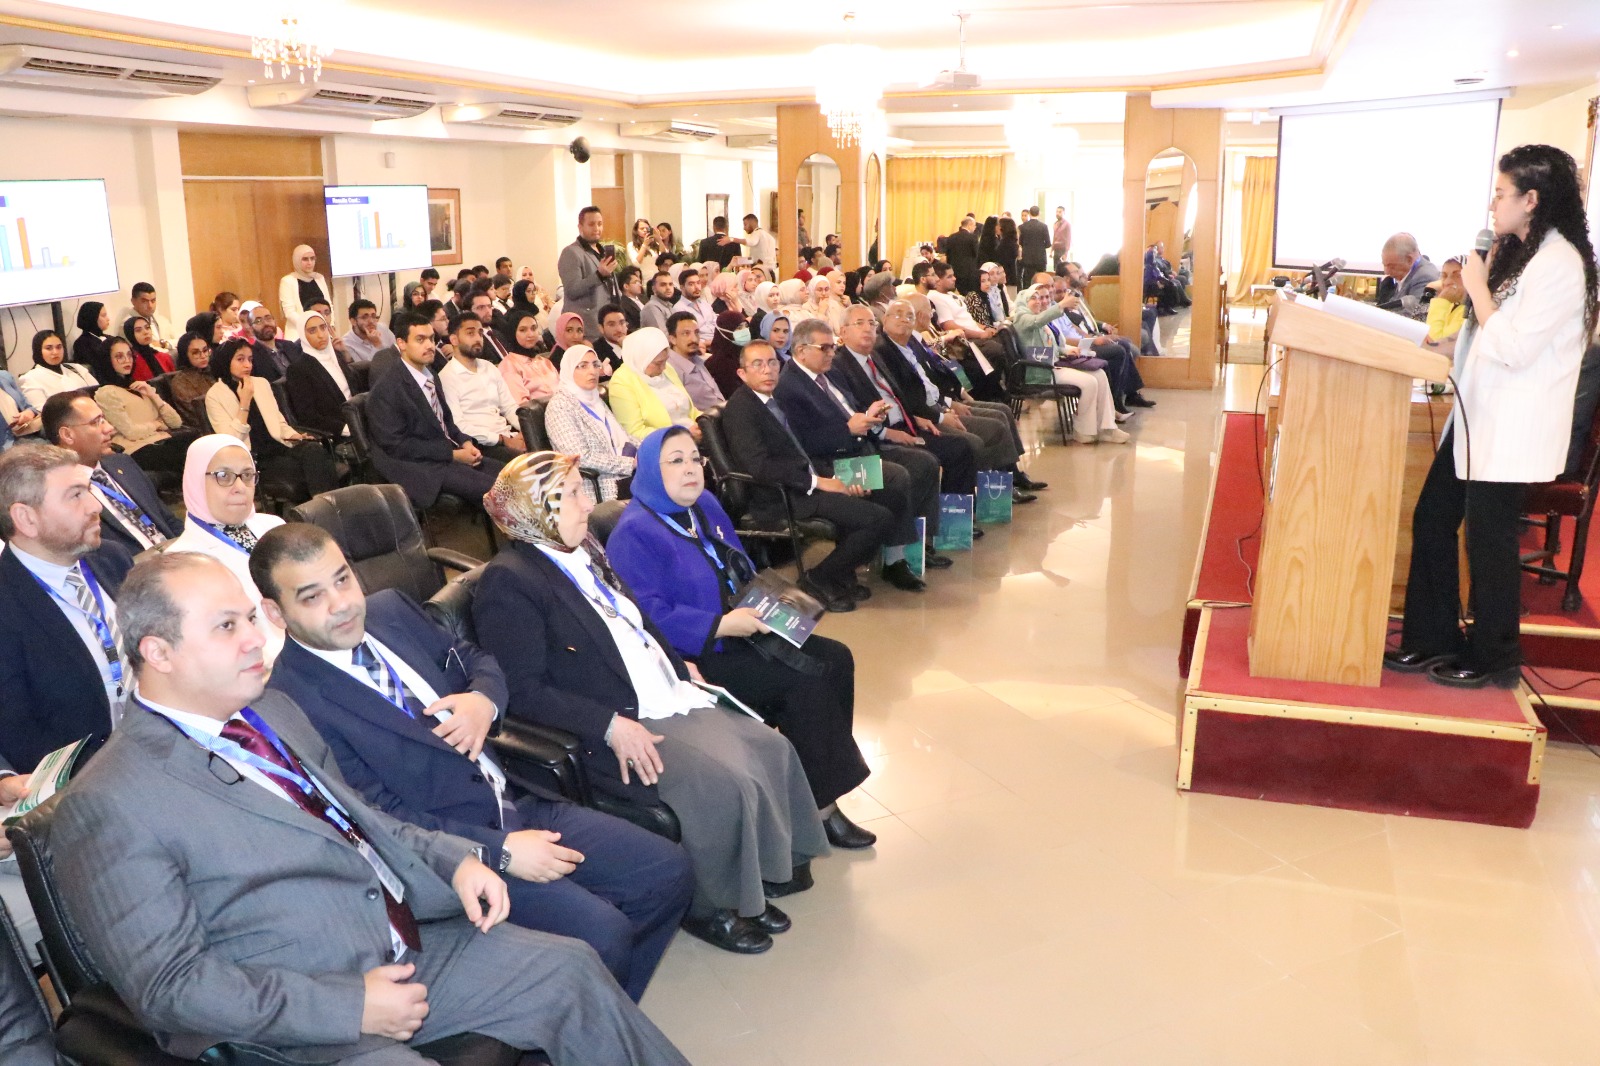 كلية طب جامعة مصر للعلوم والتكنولوجيا تعقد المؤتمر البحثى الطلابى (22)